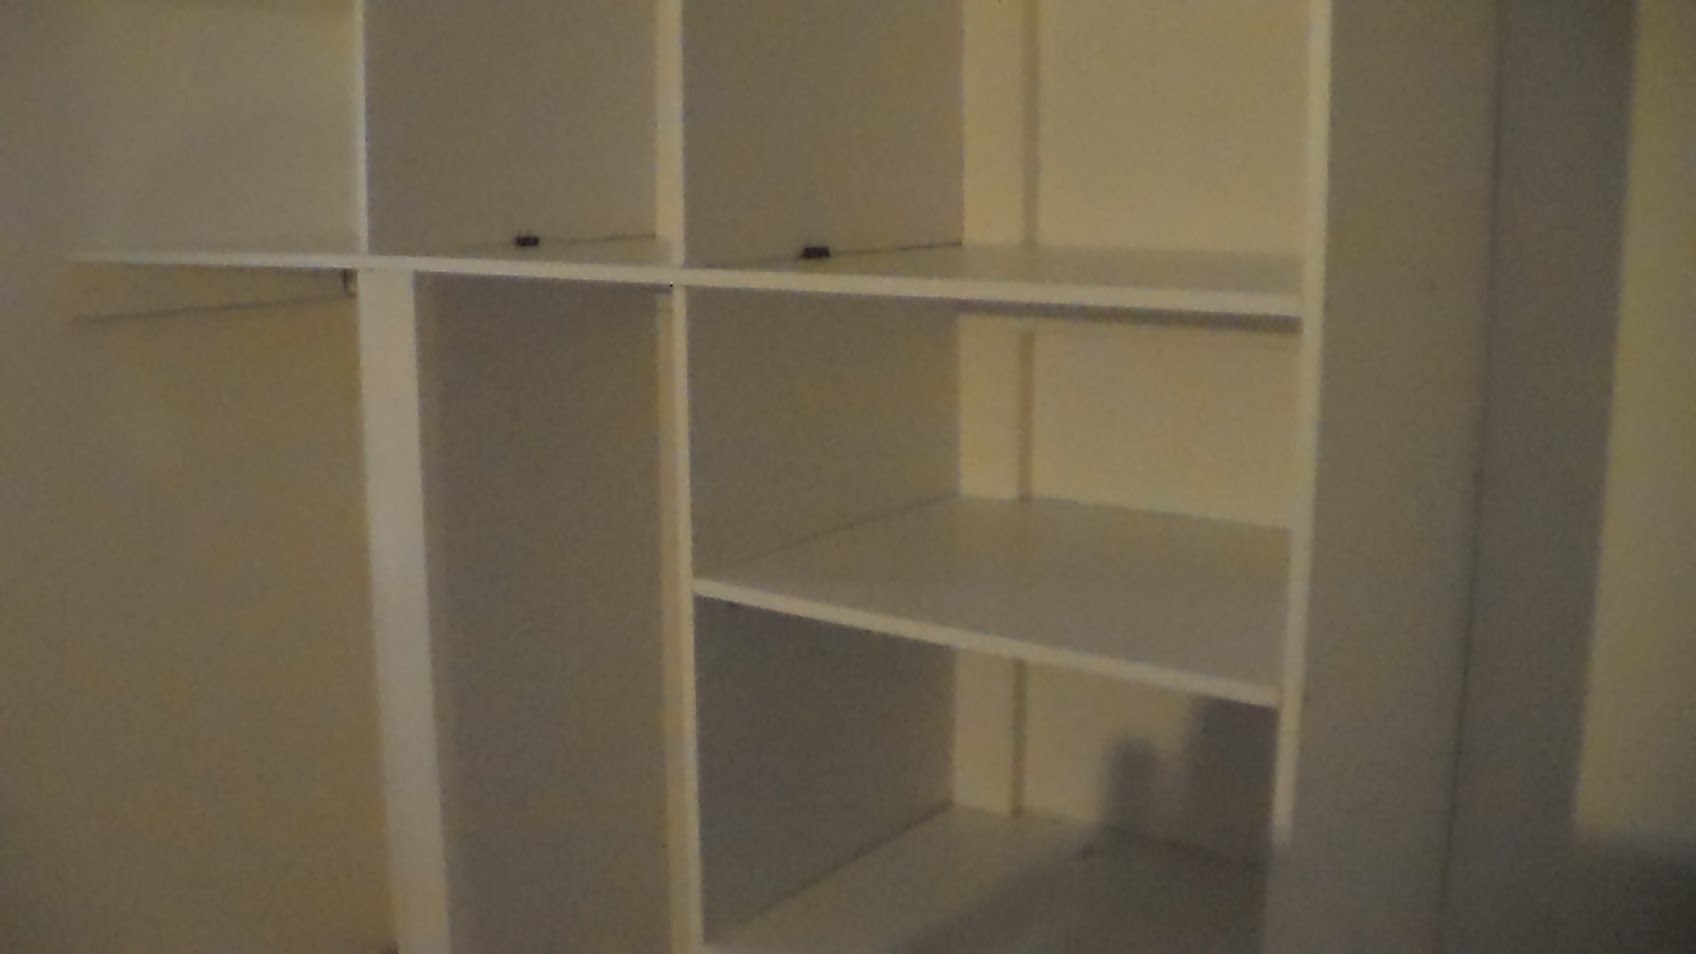 Comment faire des etageres, how to make shelves